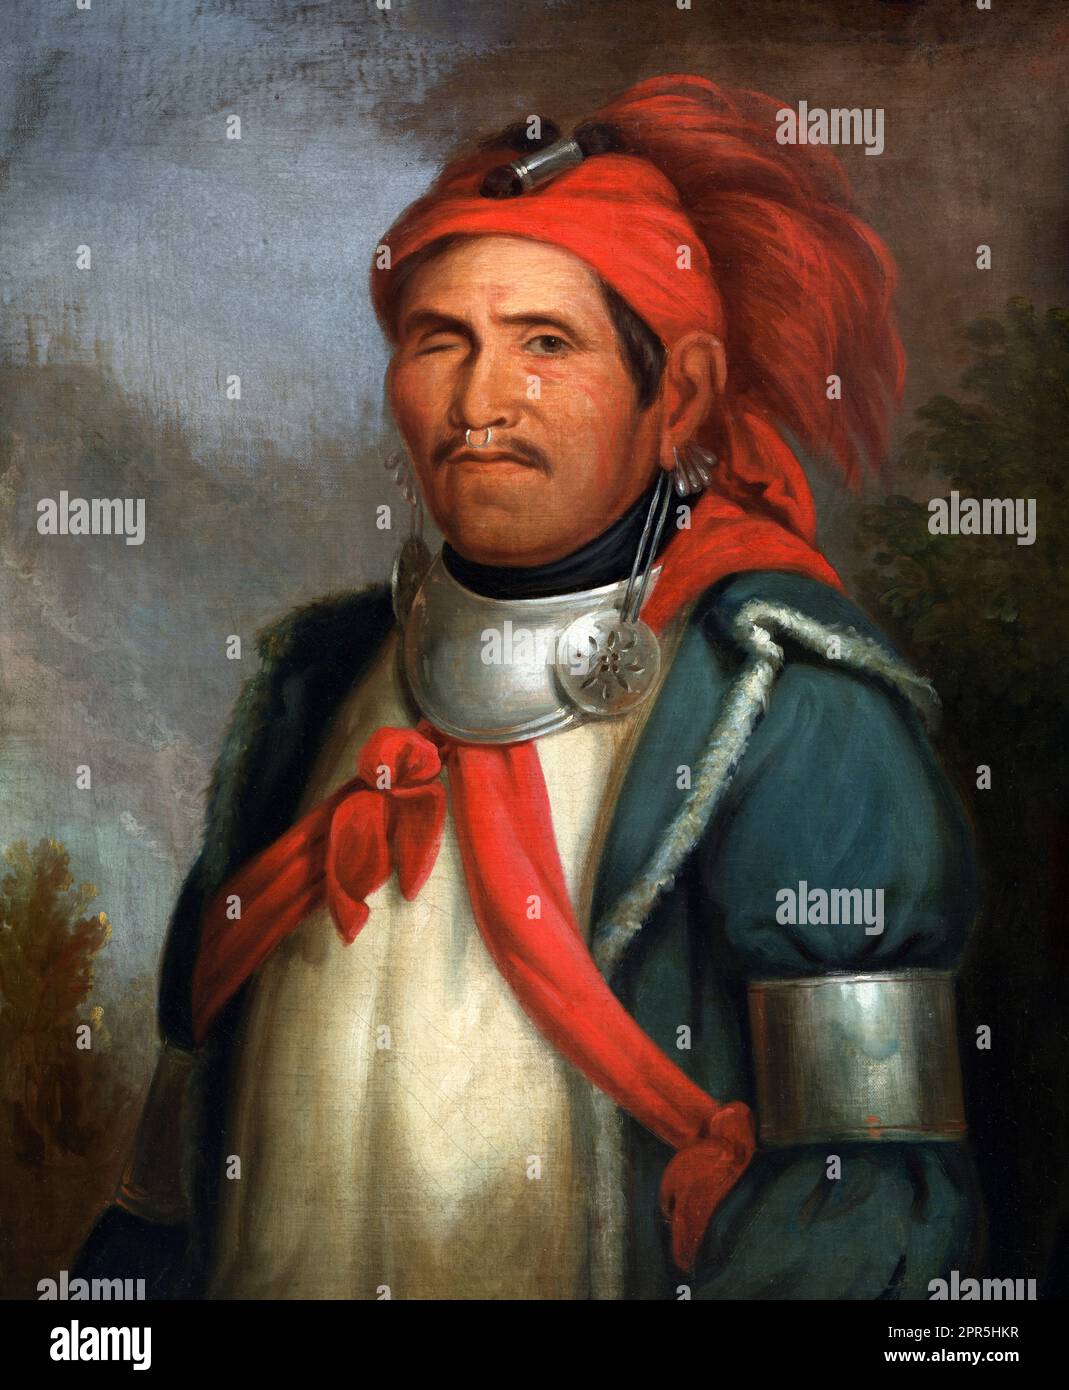 Tenskwatawa. Portrait du chef religieux et politique amérindien de la tribu Shawnee, Tenskwatawa (1775-1836) par Henry inman après Charles Bird King, huile sur toile, c. 1830-33 Banque D'Images